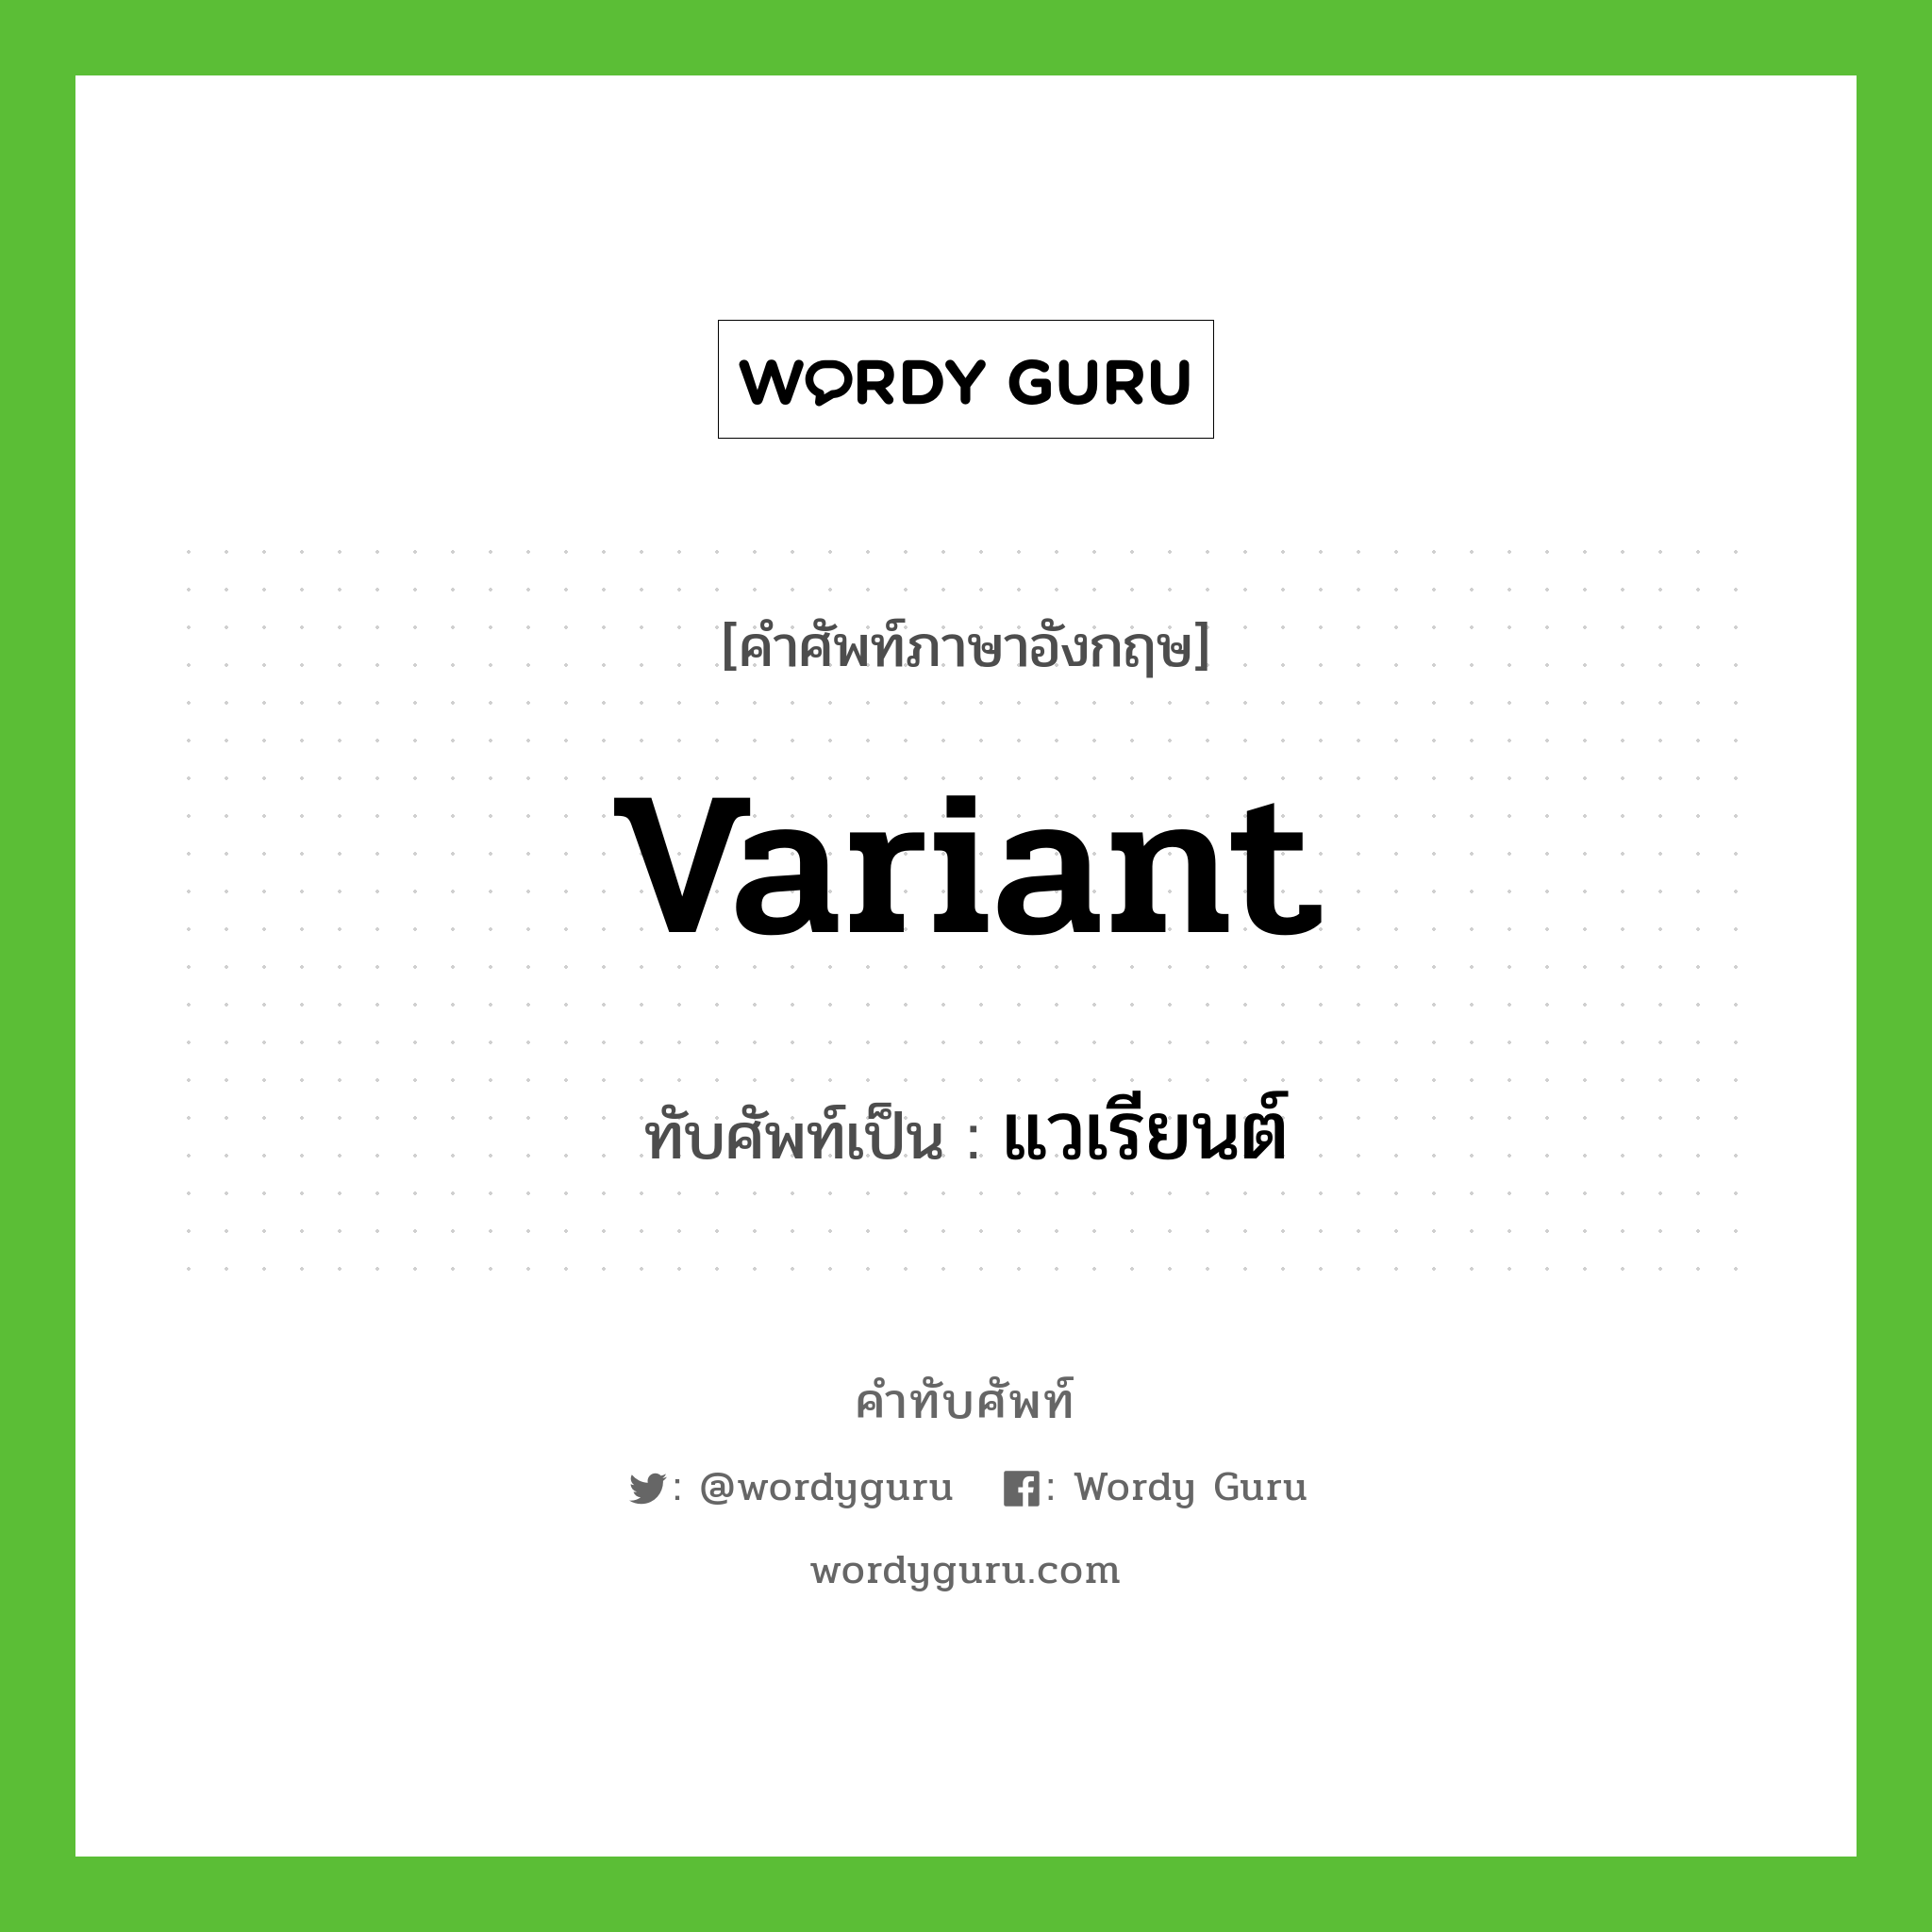 variant เขียนเป็นคำไทยว่าอะไร?, คำศัพท์ภาษาอังกฤษ variant ทับศัพท์เป็น แวเรียนต์